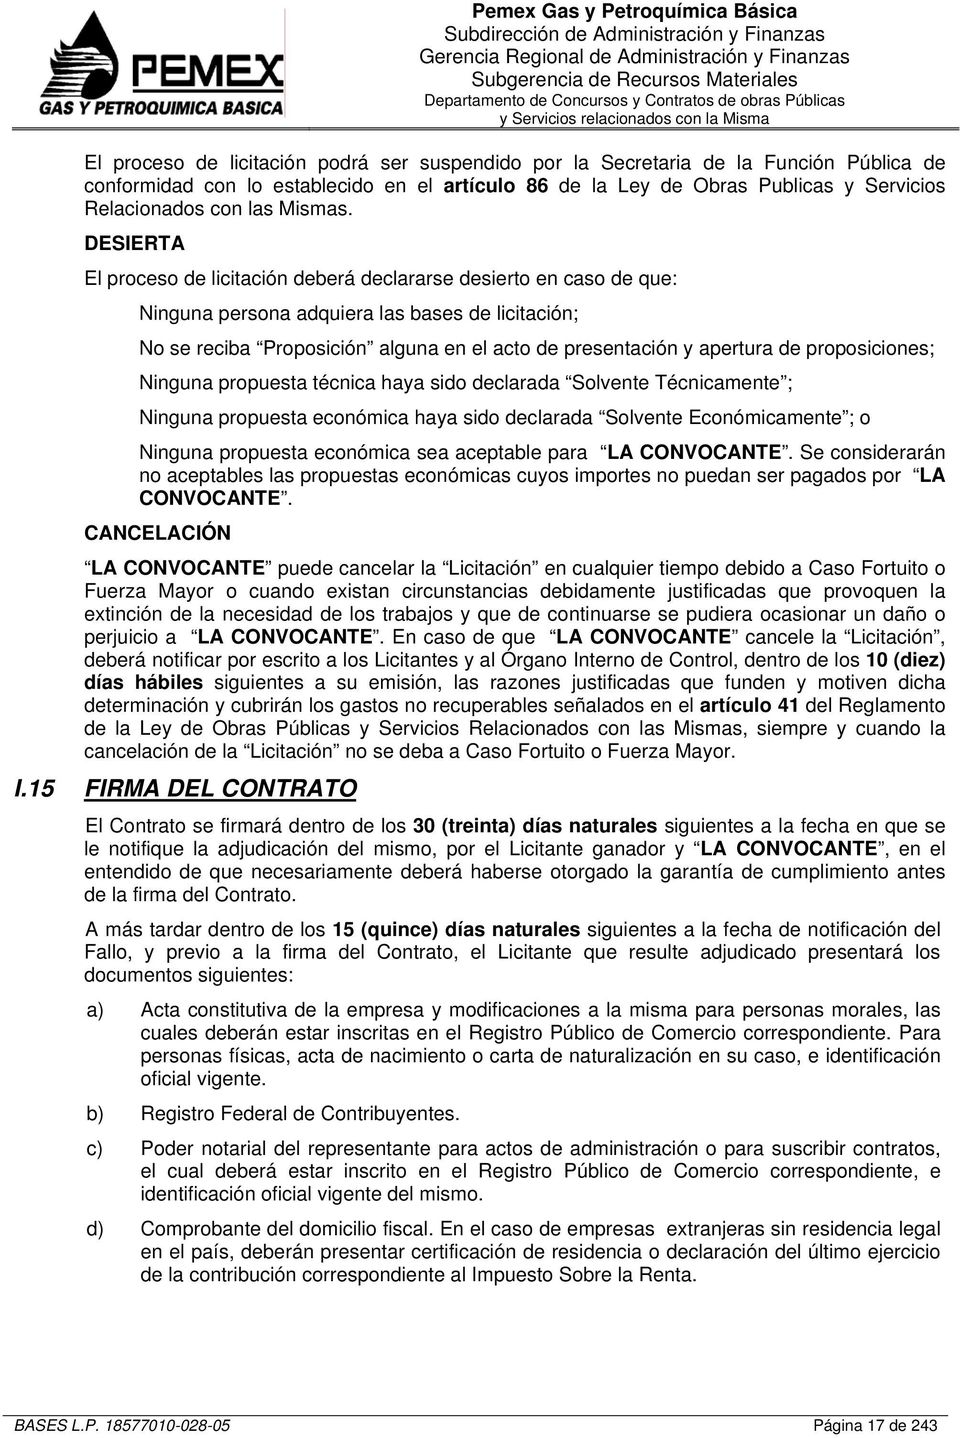 Ley de Obras Publicas y Servicios Relacionados con las Mismas.